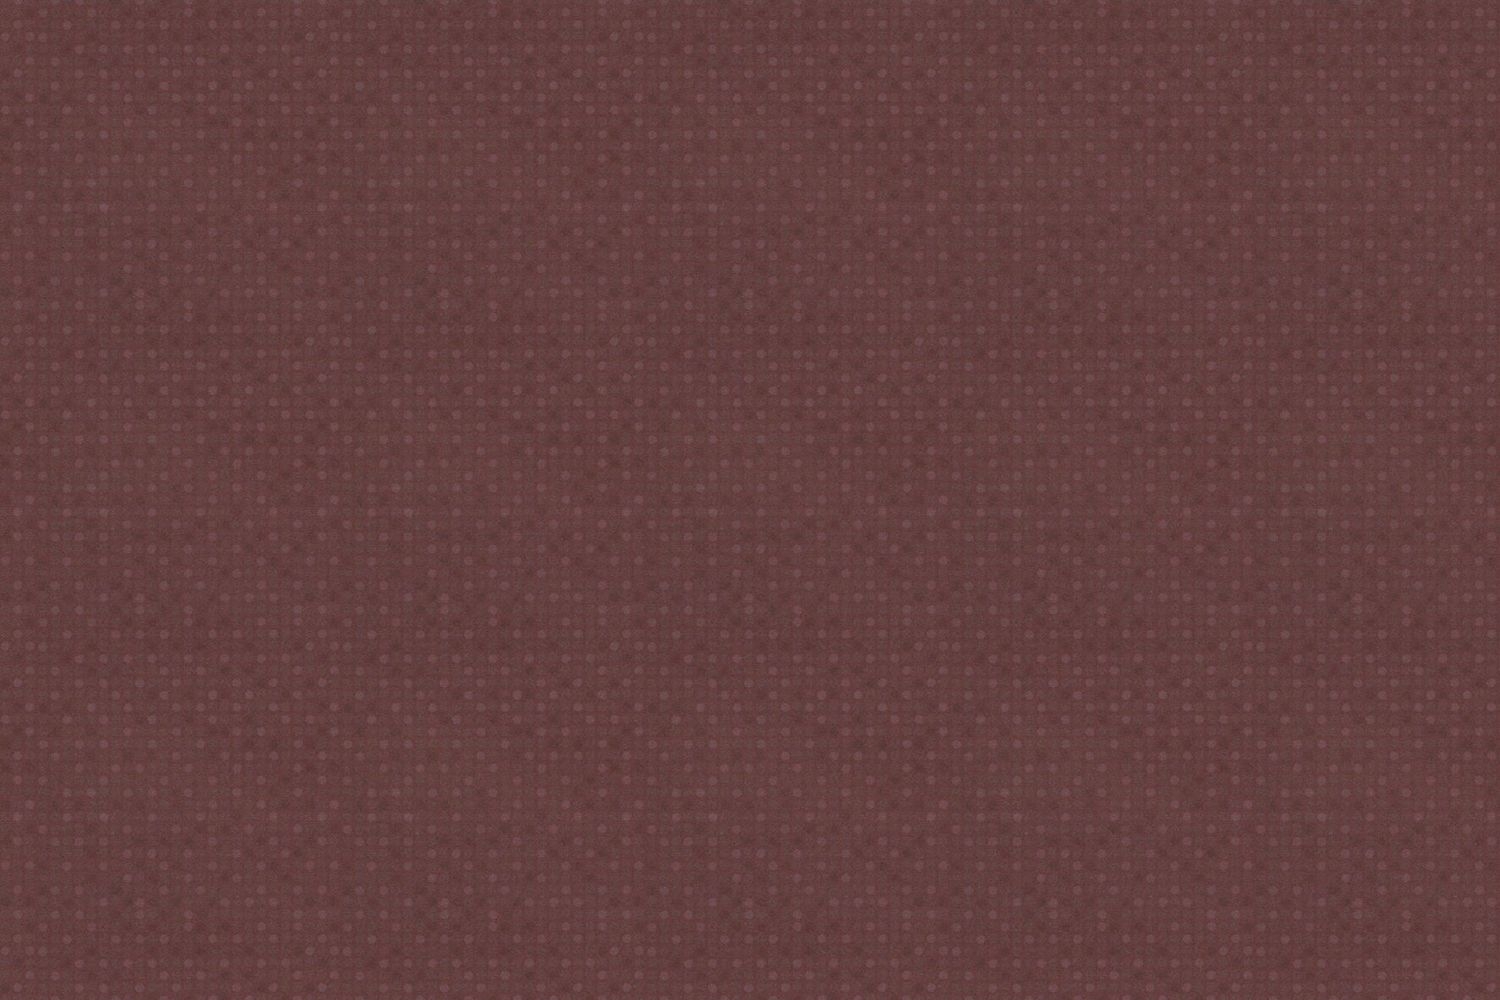 Плитка Cersanit Elisabeta 30x45 коричневая 000009054 by Cersanit (Украина- Польша) color Коричневый